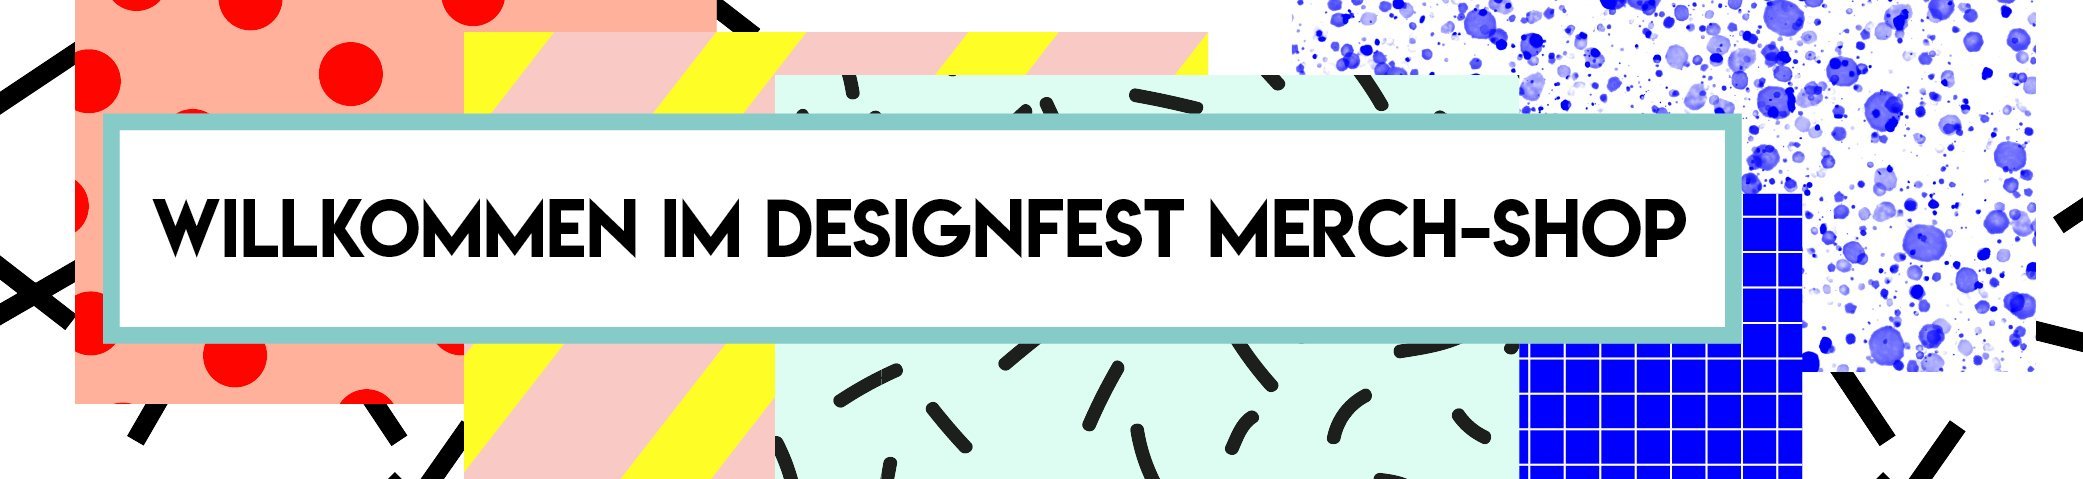 DesignFest